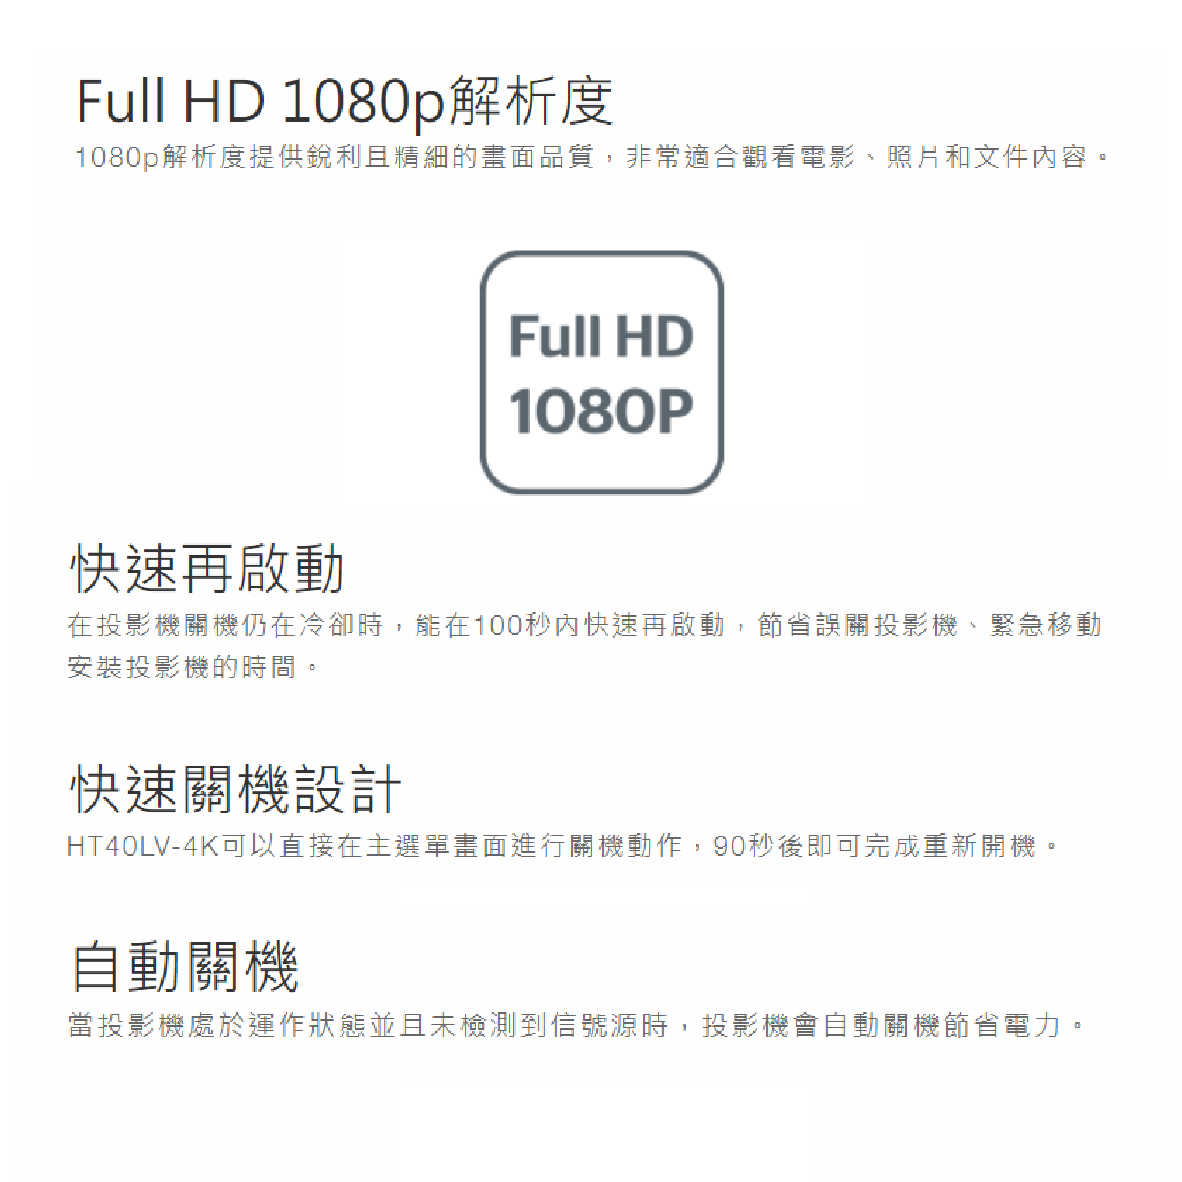 Optoma 奧圖碼 HT40LV-4K 支援4K 4400流明 Full HD 商用 教學 投影機 | 金曲音響